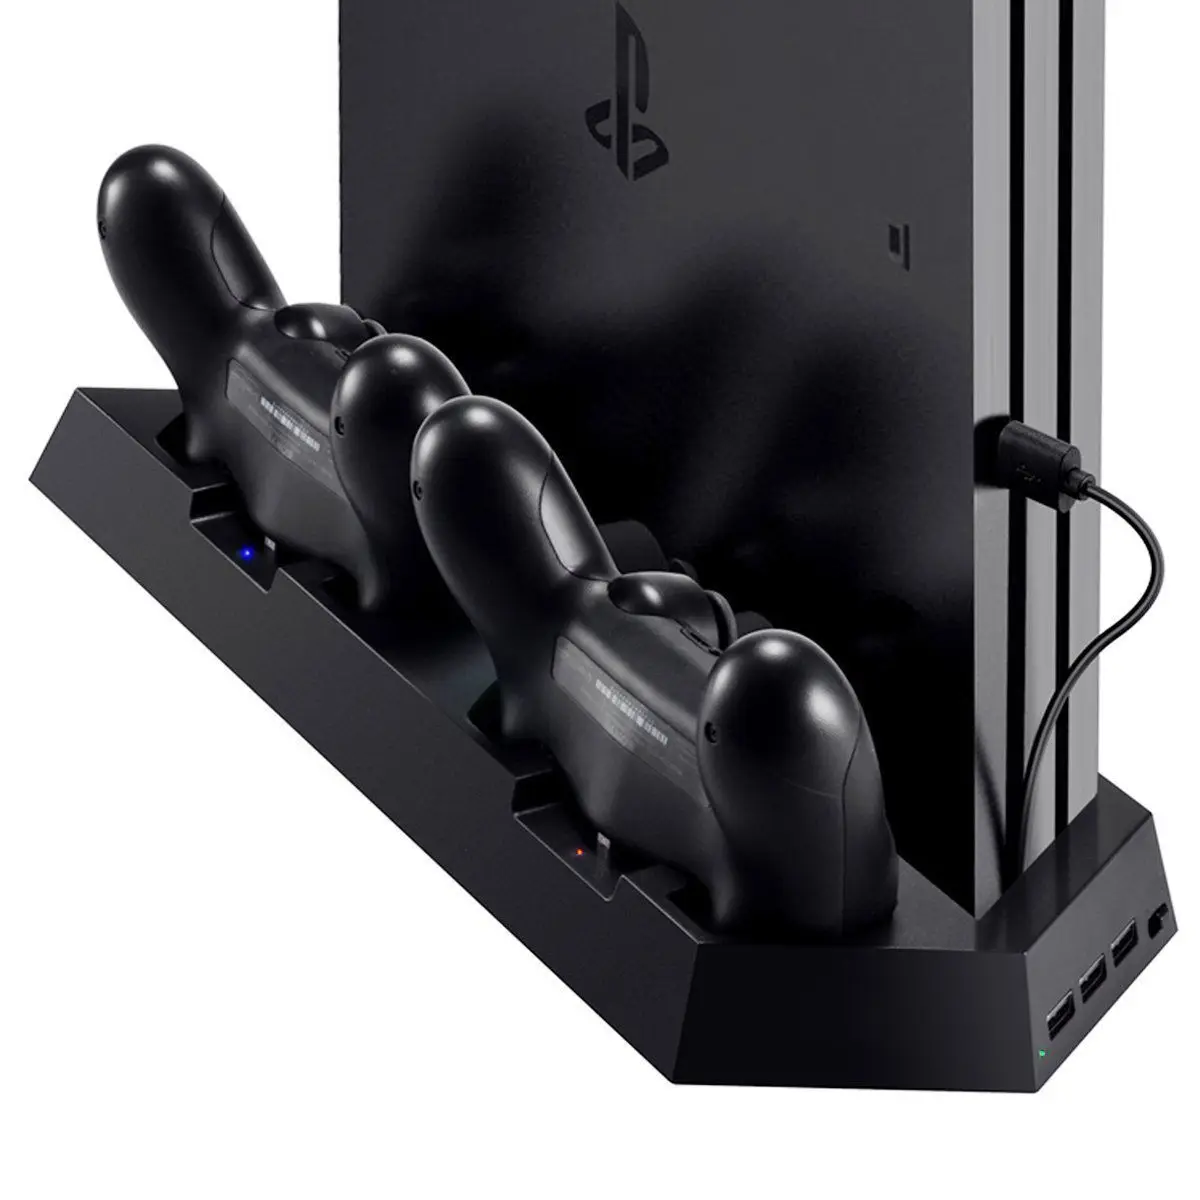 Вертикальная подставка зарядное устройство для PS4/PS4 Pro/PS4 Slim] двойной контроллер зарядная станция с охлаждающим вентилятором для sony Playstation 4